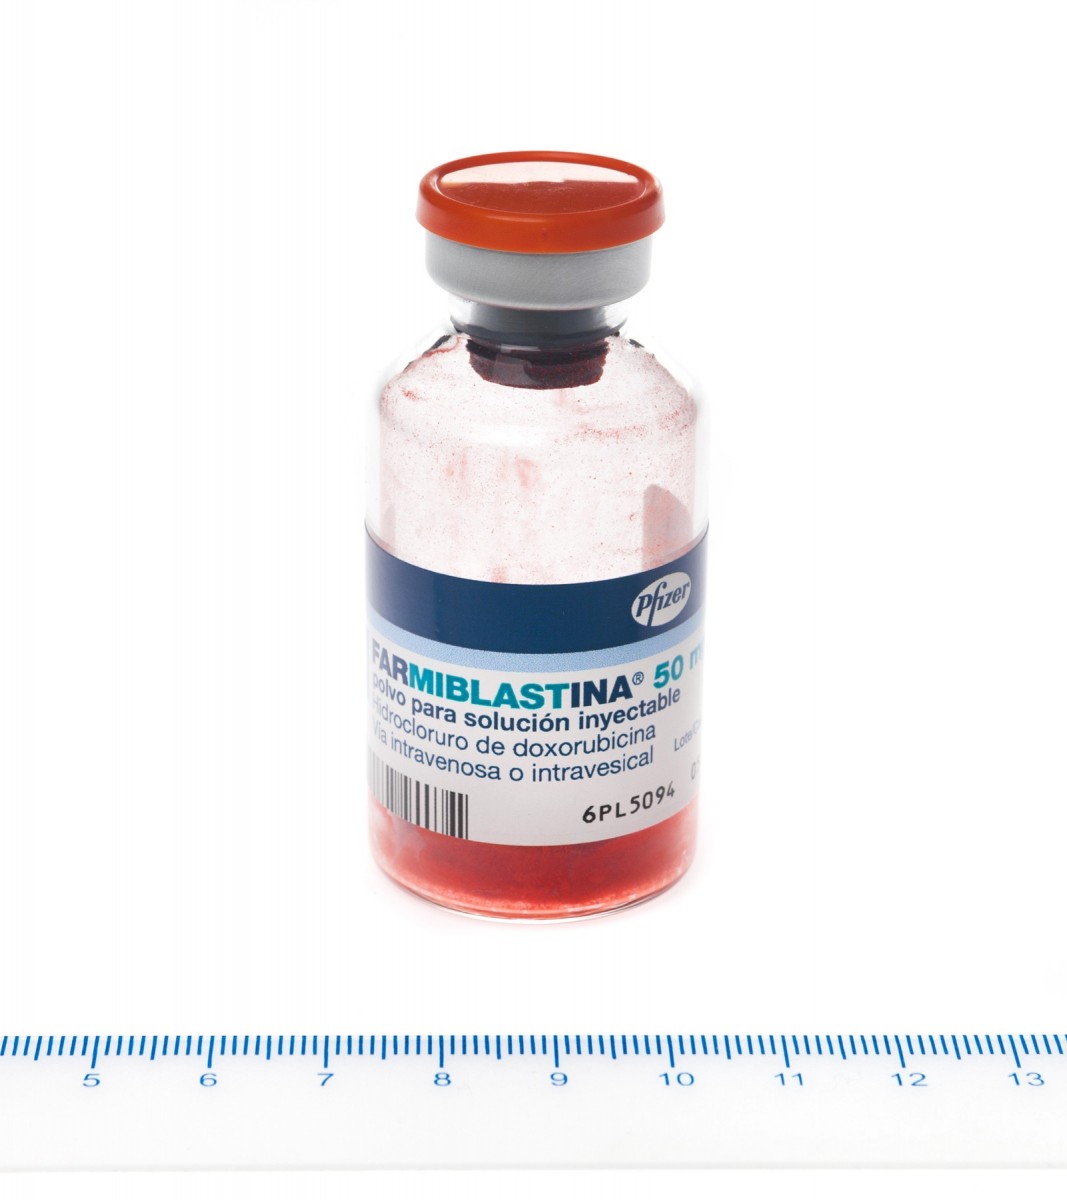 FARMIBLASTINA 50 mg POLVO PARA SOLUCION INYECTABLE, 1 vial fotografía de la forma farmacéutica.